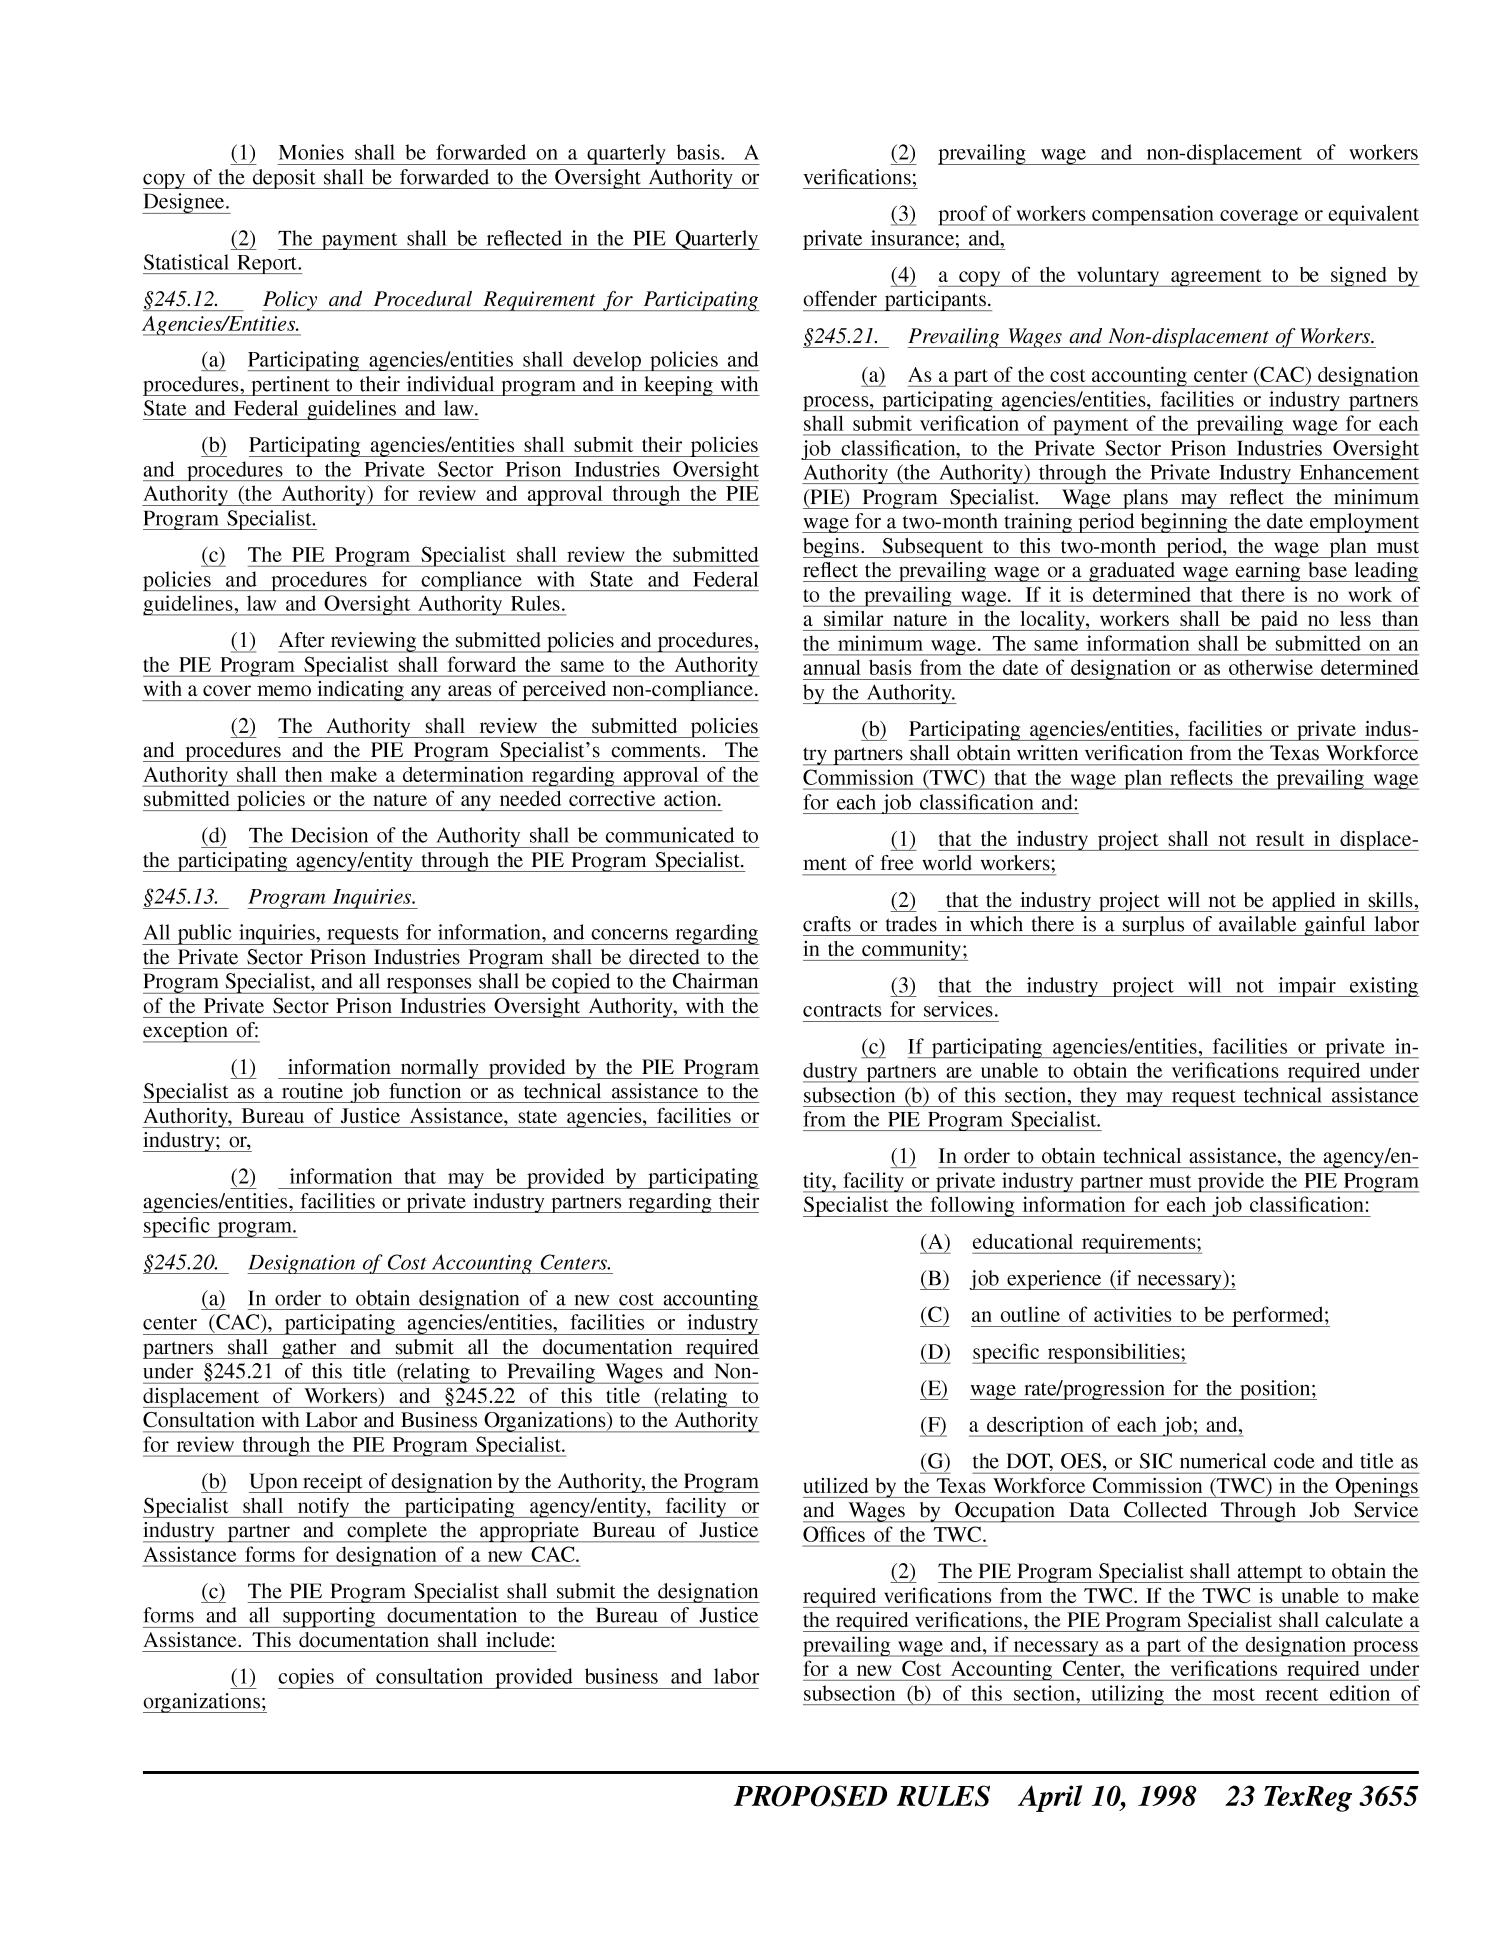 Texas Register, Volume 23, Number 15, Pages 3631-3764, April 10, 1998
                                                
                                                    3655
                                                